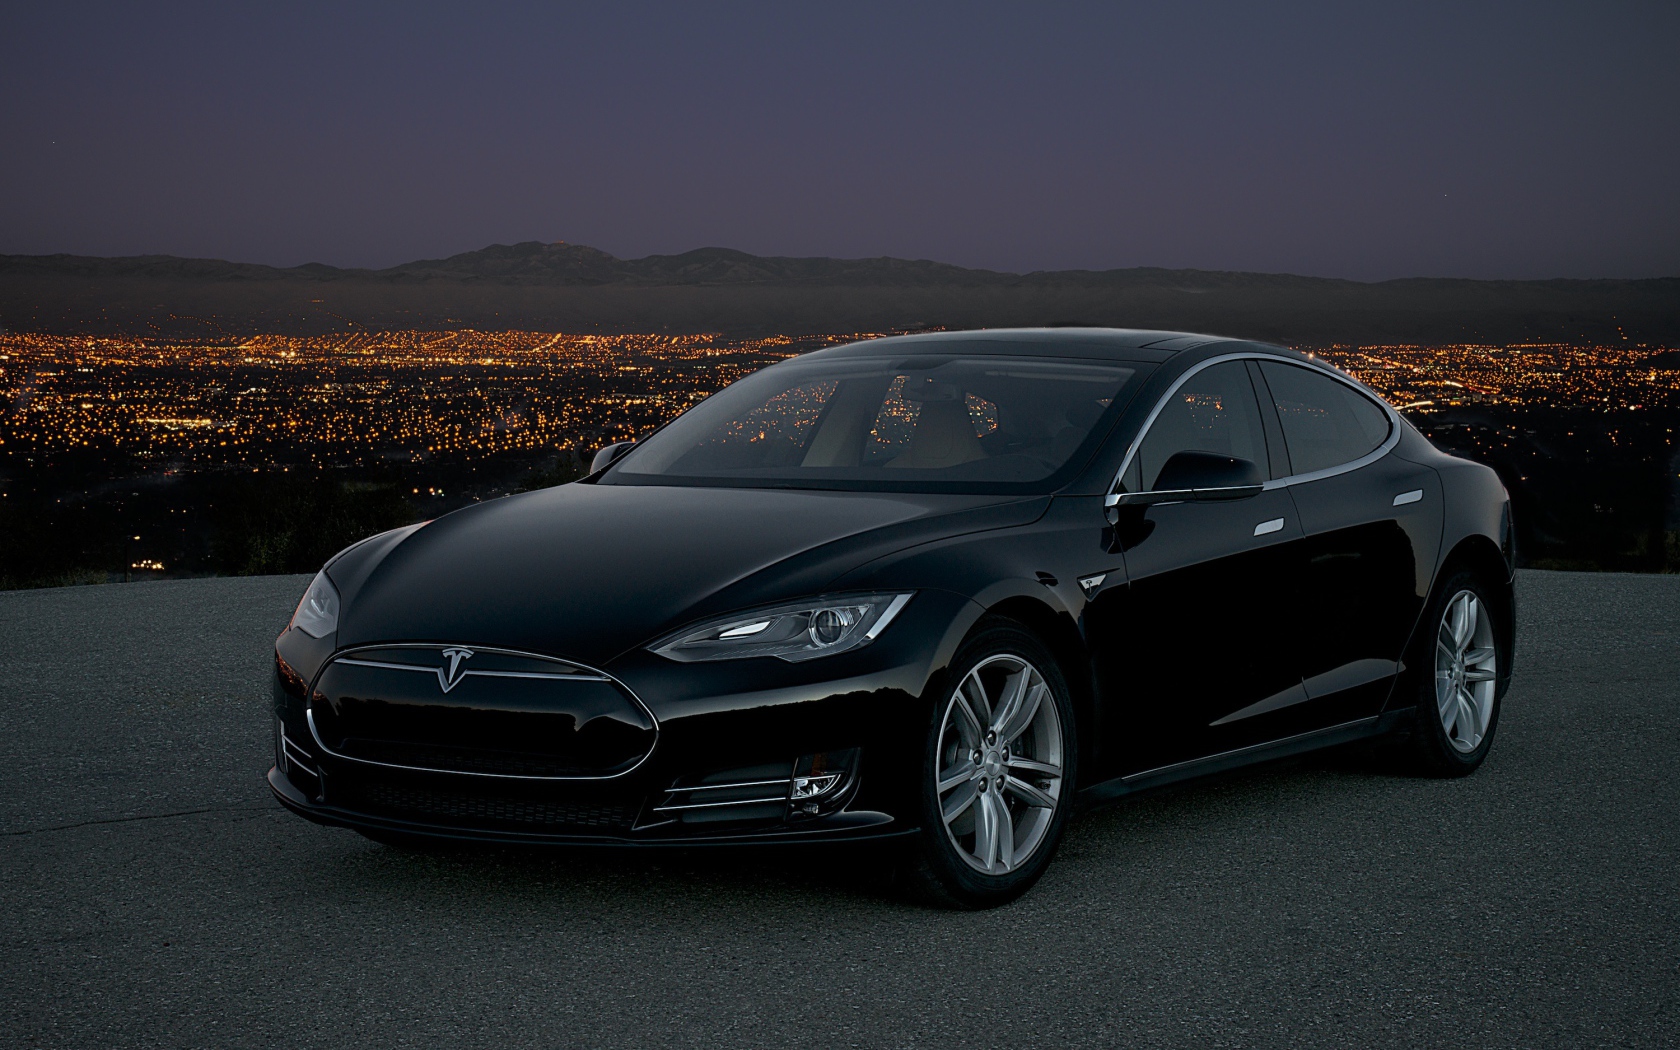 Черный стильный электромобиль Tesla Model S на фоне ночного мегаполиса 